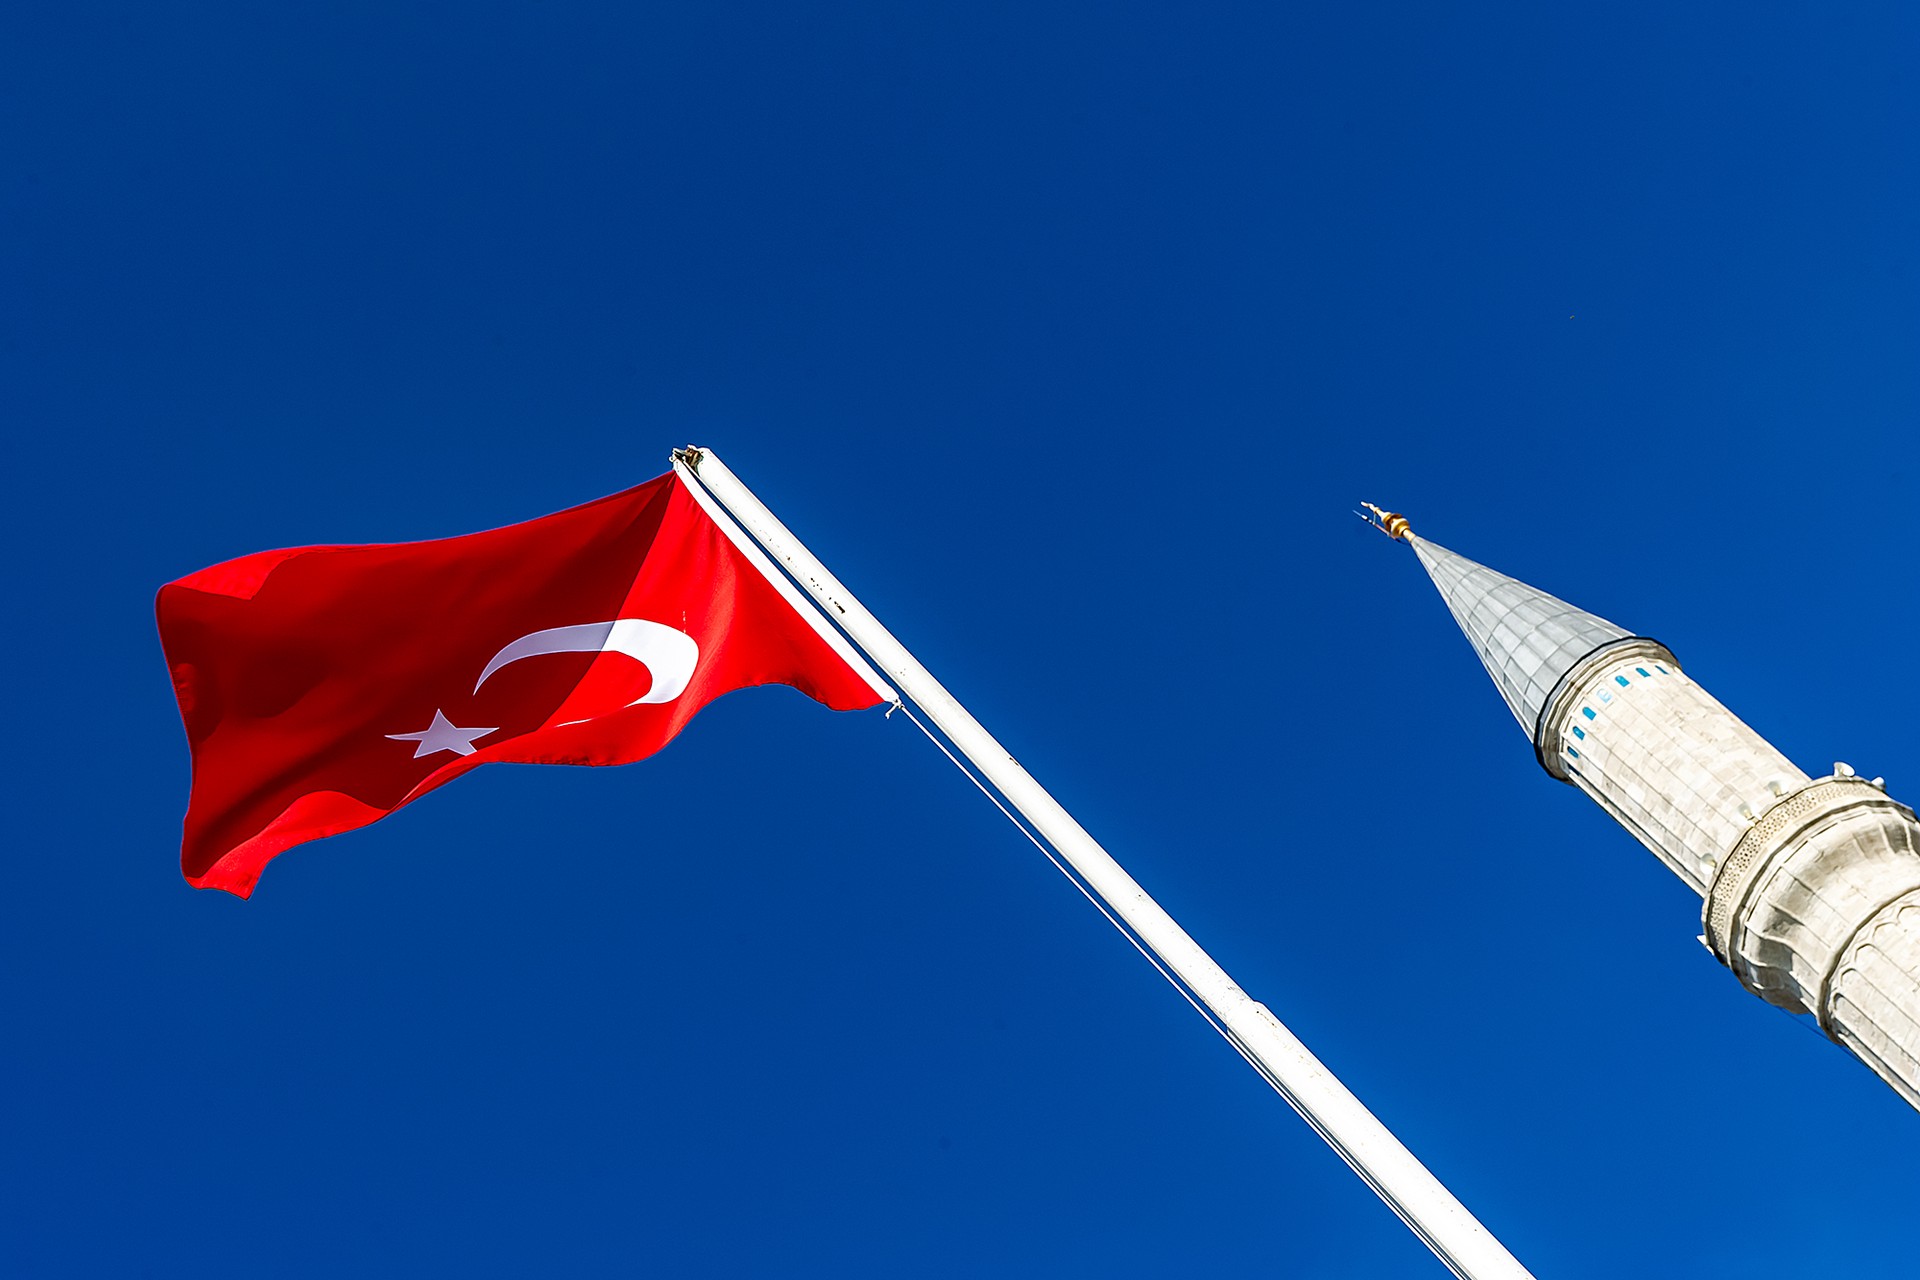 Hürriyet: Турция и США договорились о новой системе по антироссийским санкциям